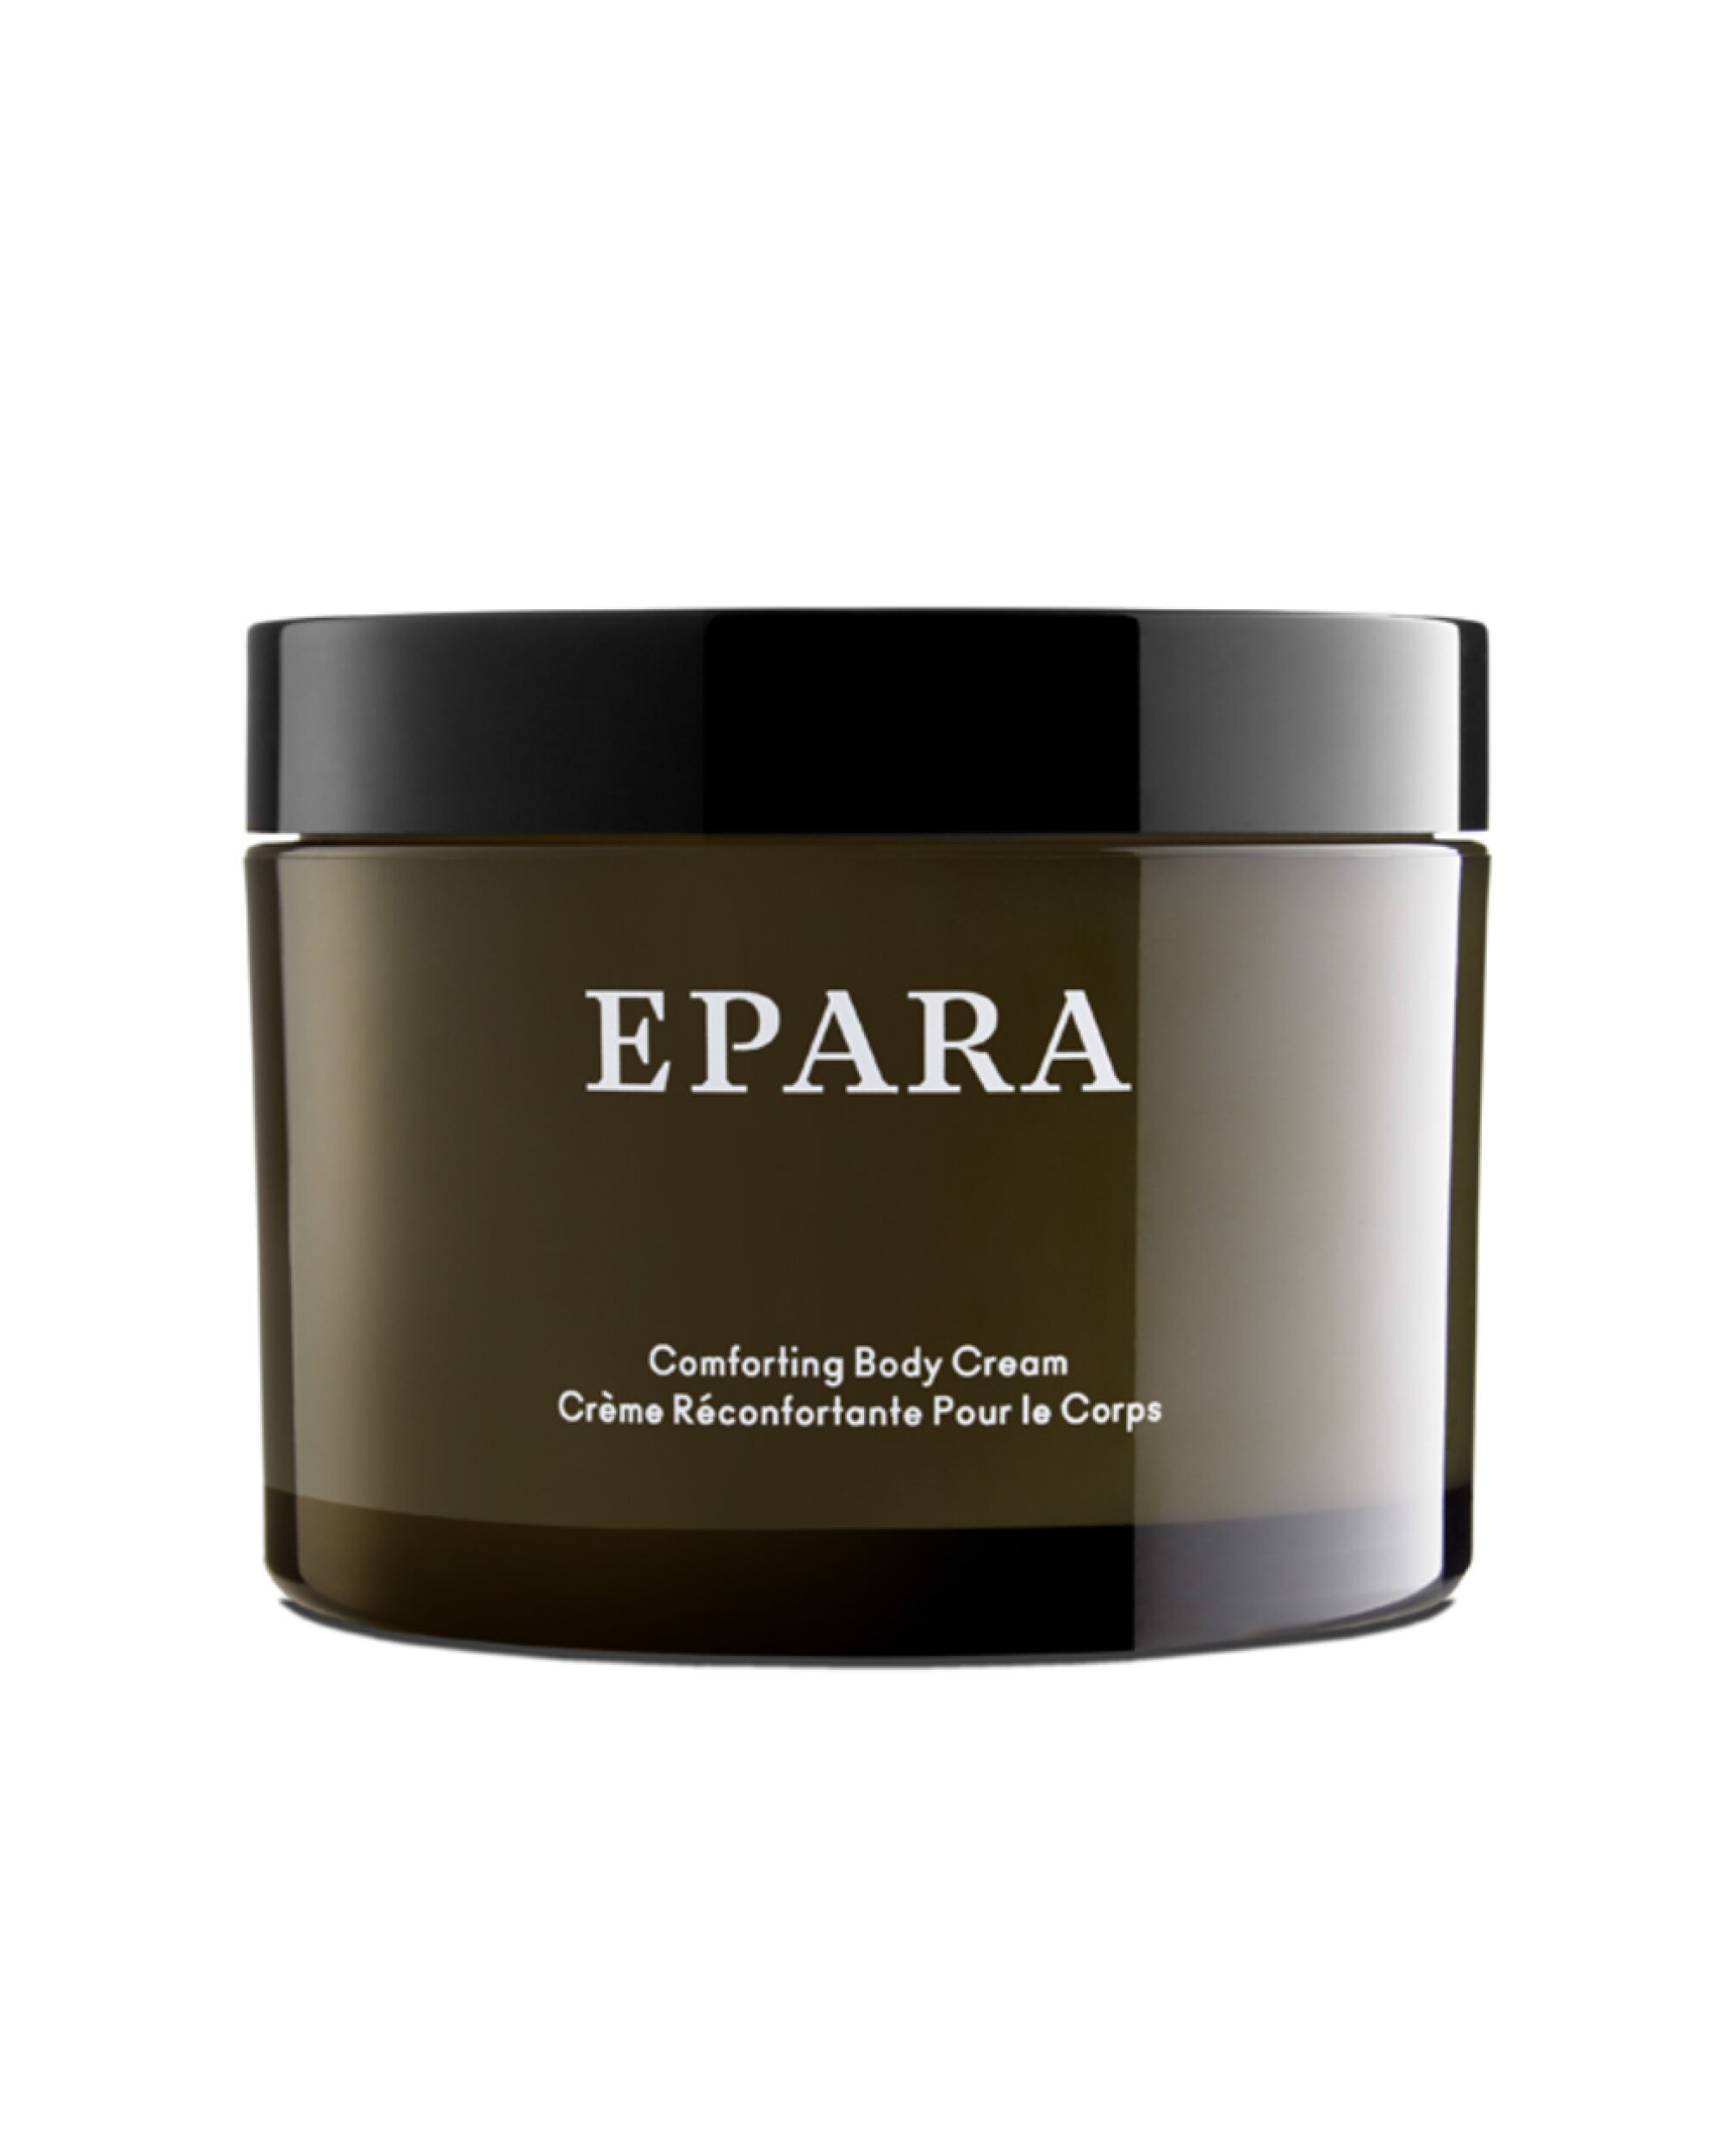 Comforting body cream by Epara